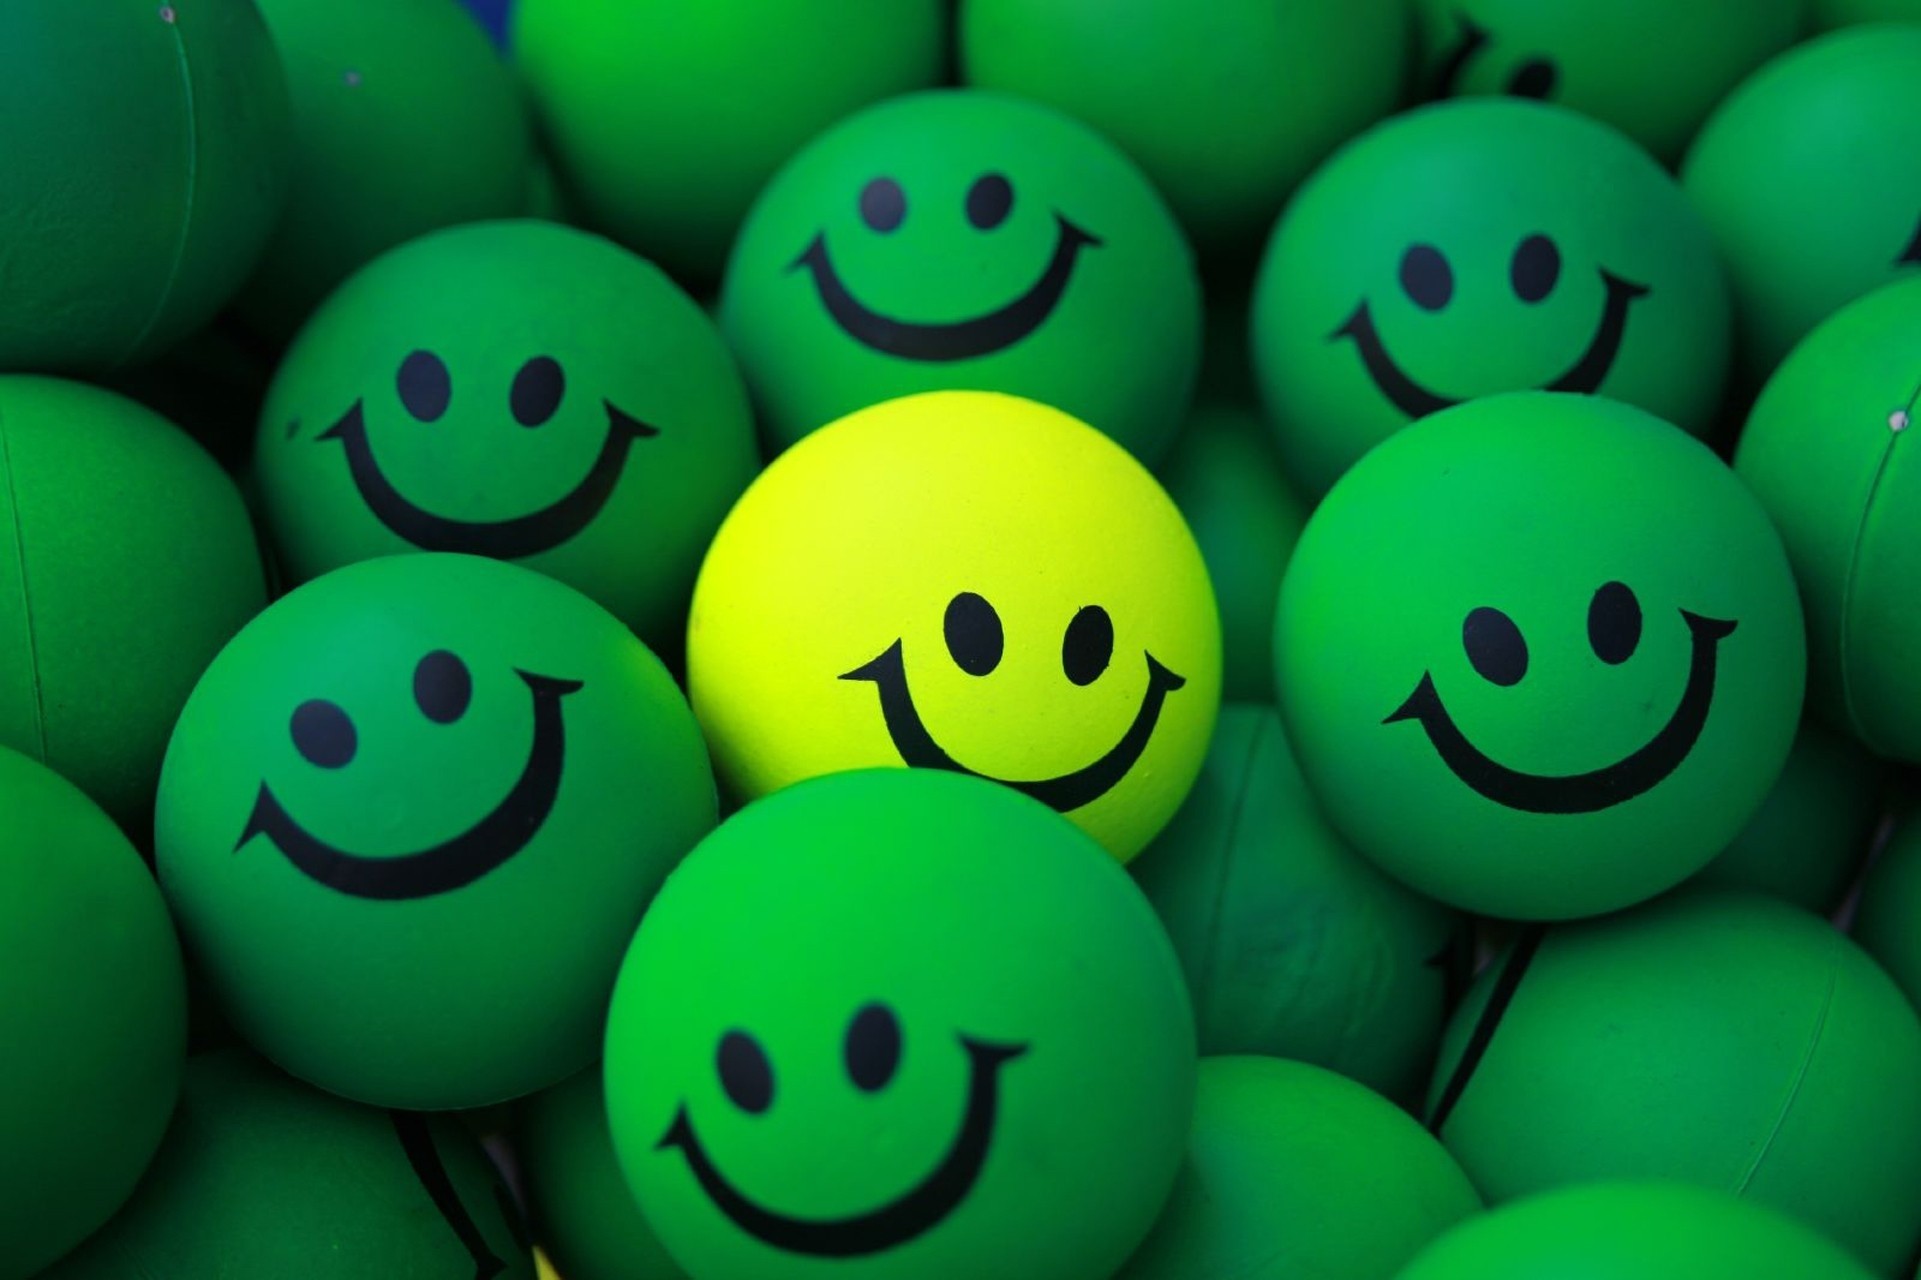 green, smile, smilies, balls, miscellaneous, smiles, yellow, miscellanea wallpaper for mobile